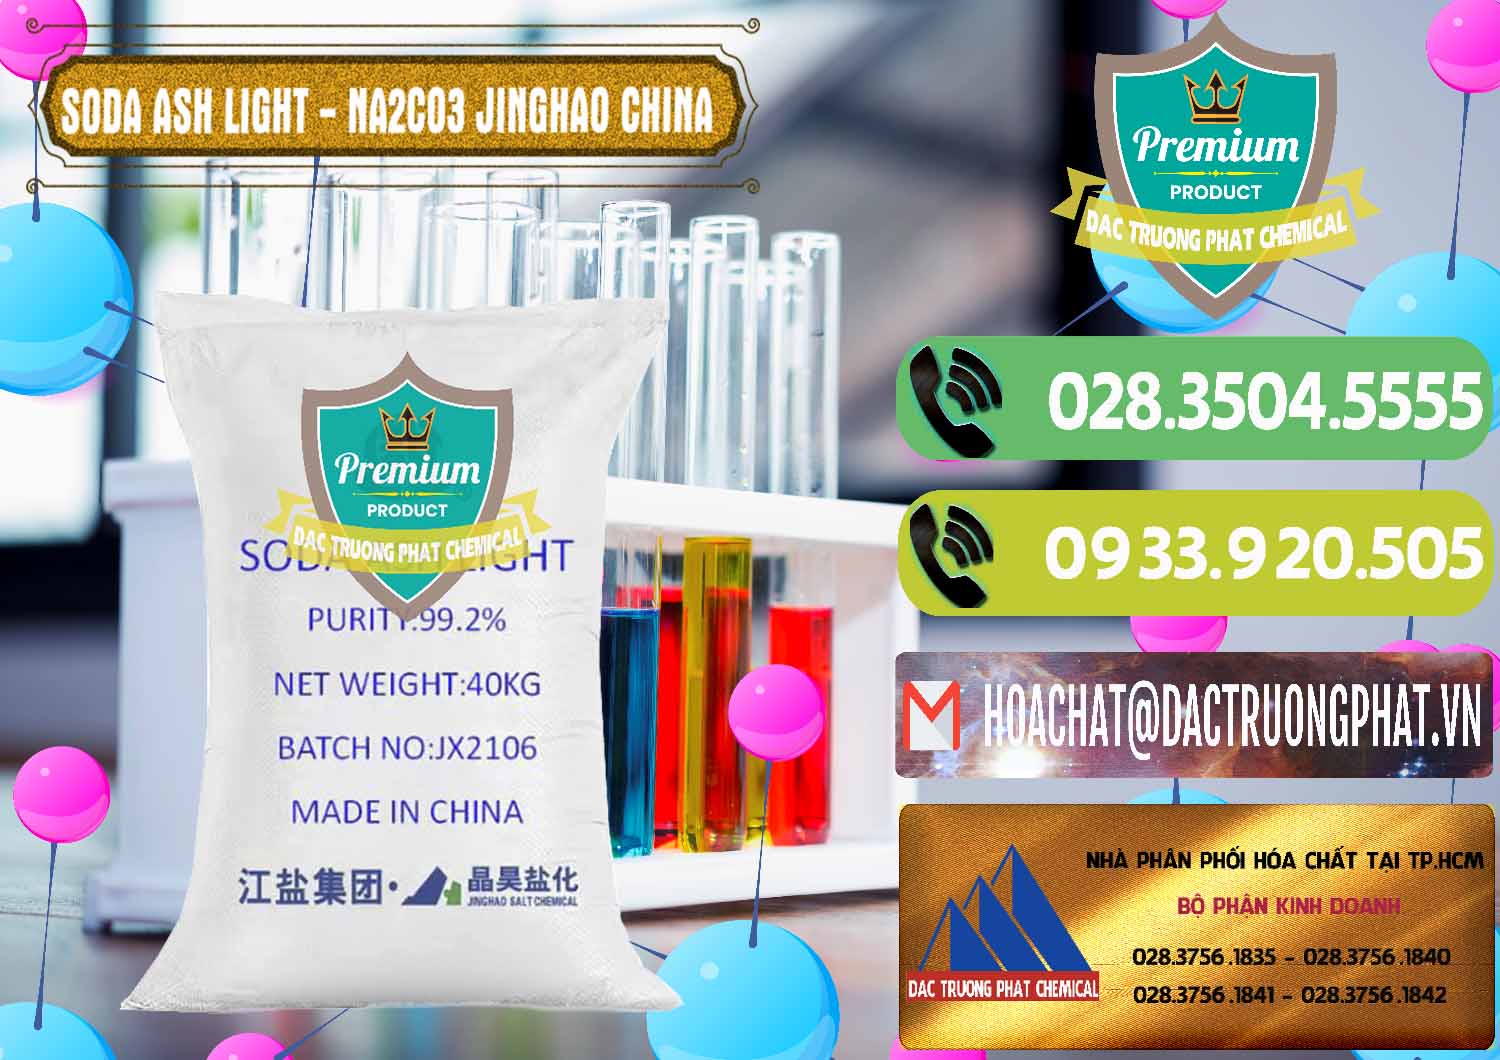 Nơi bán _ phân phối Soda Ash Light - NA2CO3 Jinghao Trung Quốc China - 0339 - Chuyên nhập khẩu _ cung cấp hóa chất tại TP.HCM - hoachatmientay.vn